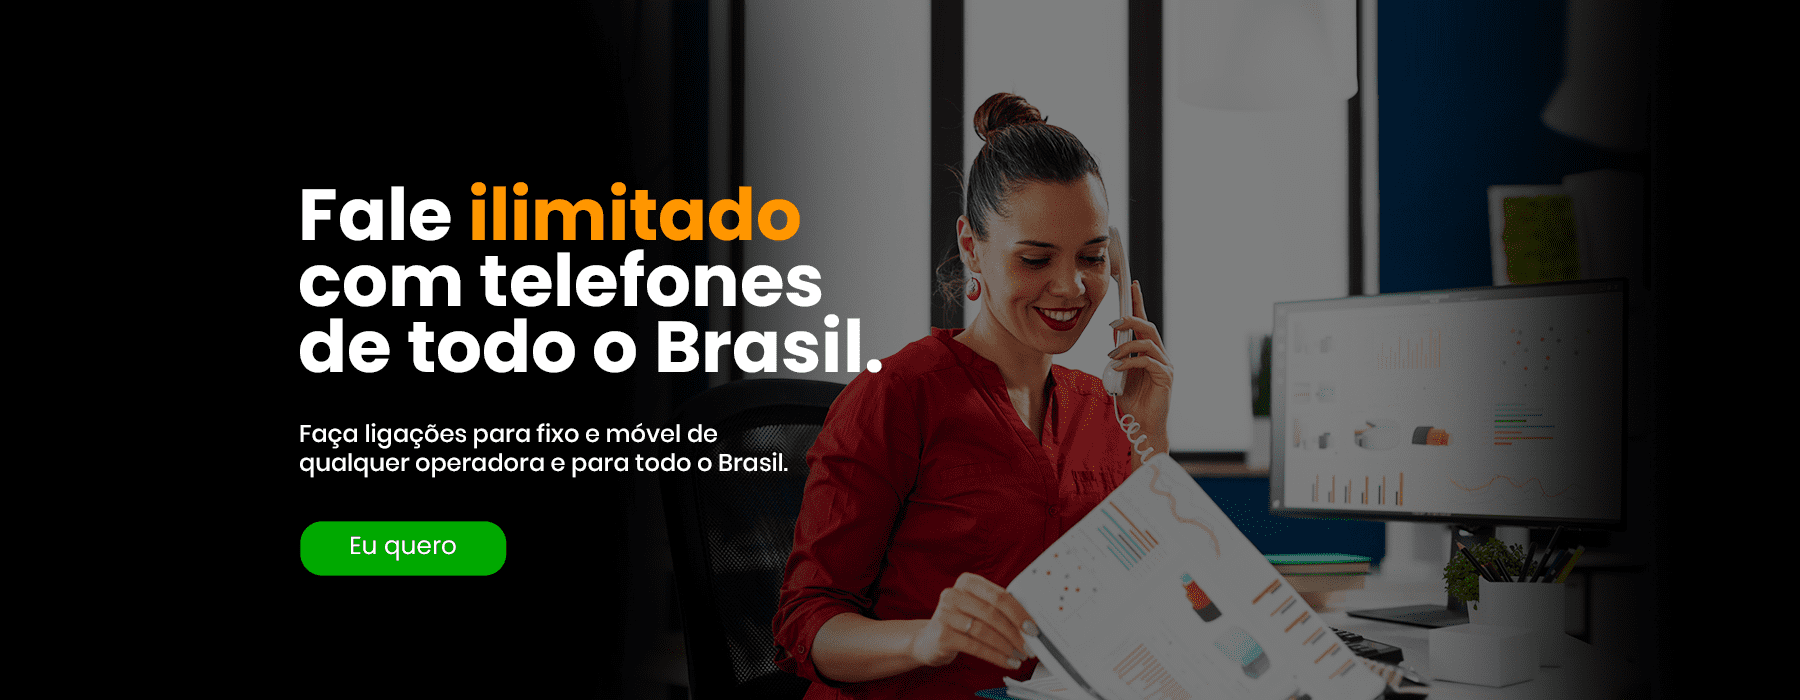 Fale ilimitado com telefones de todo Brasil - Gospelnet